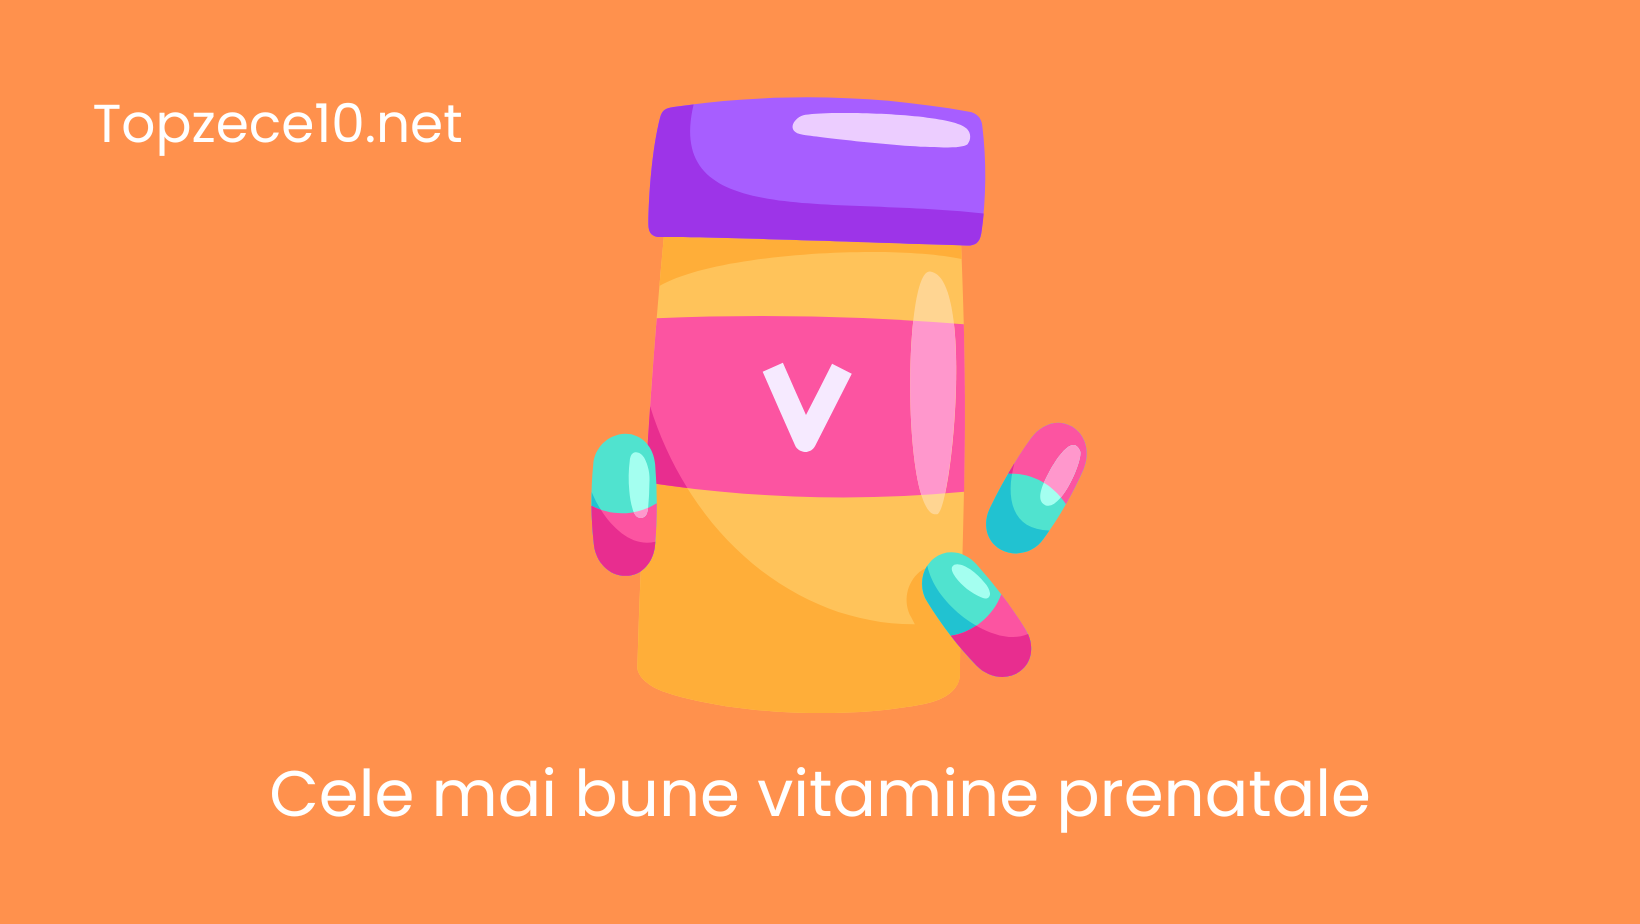 Top cele mai bune vitamine prenatale